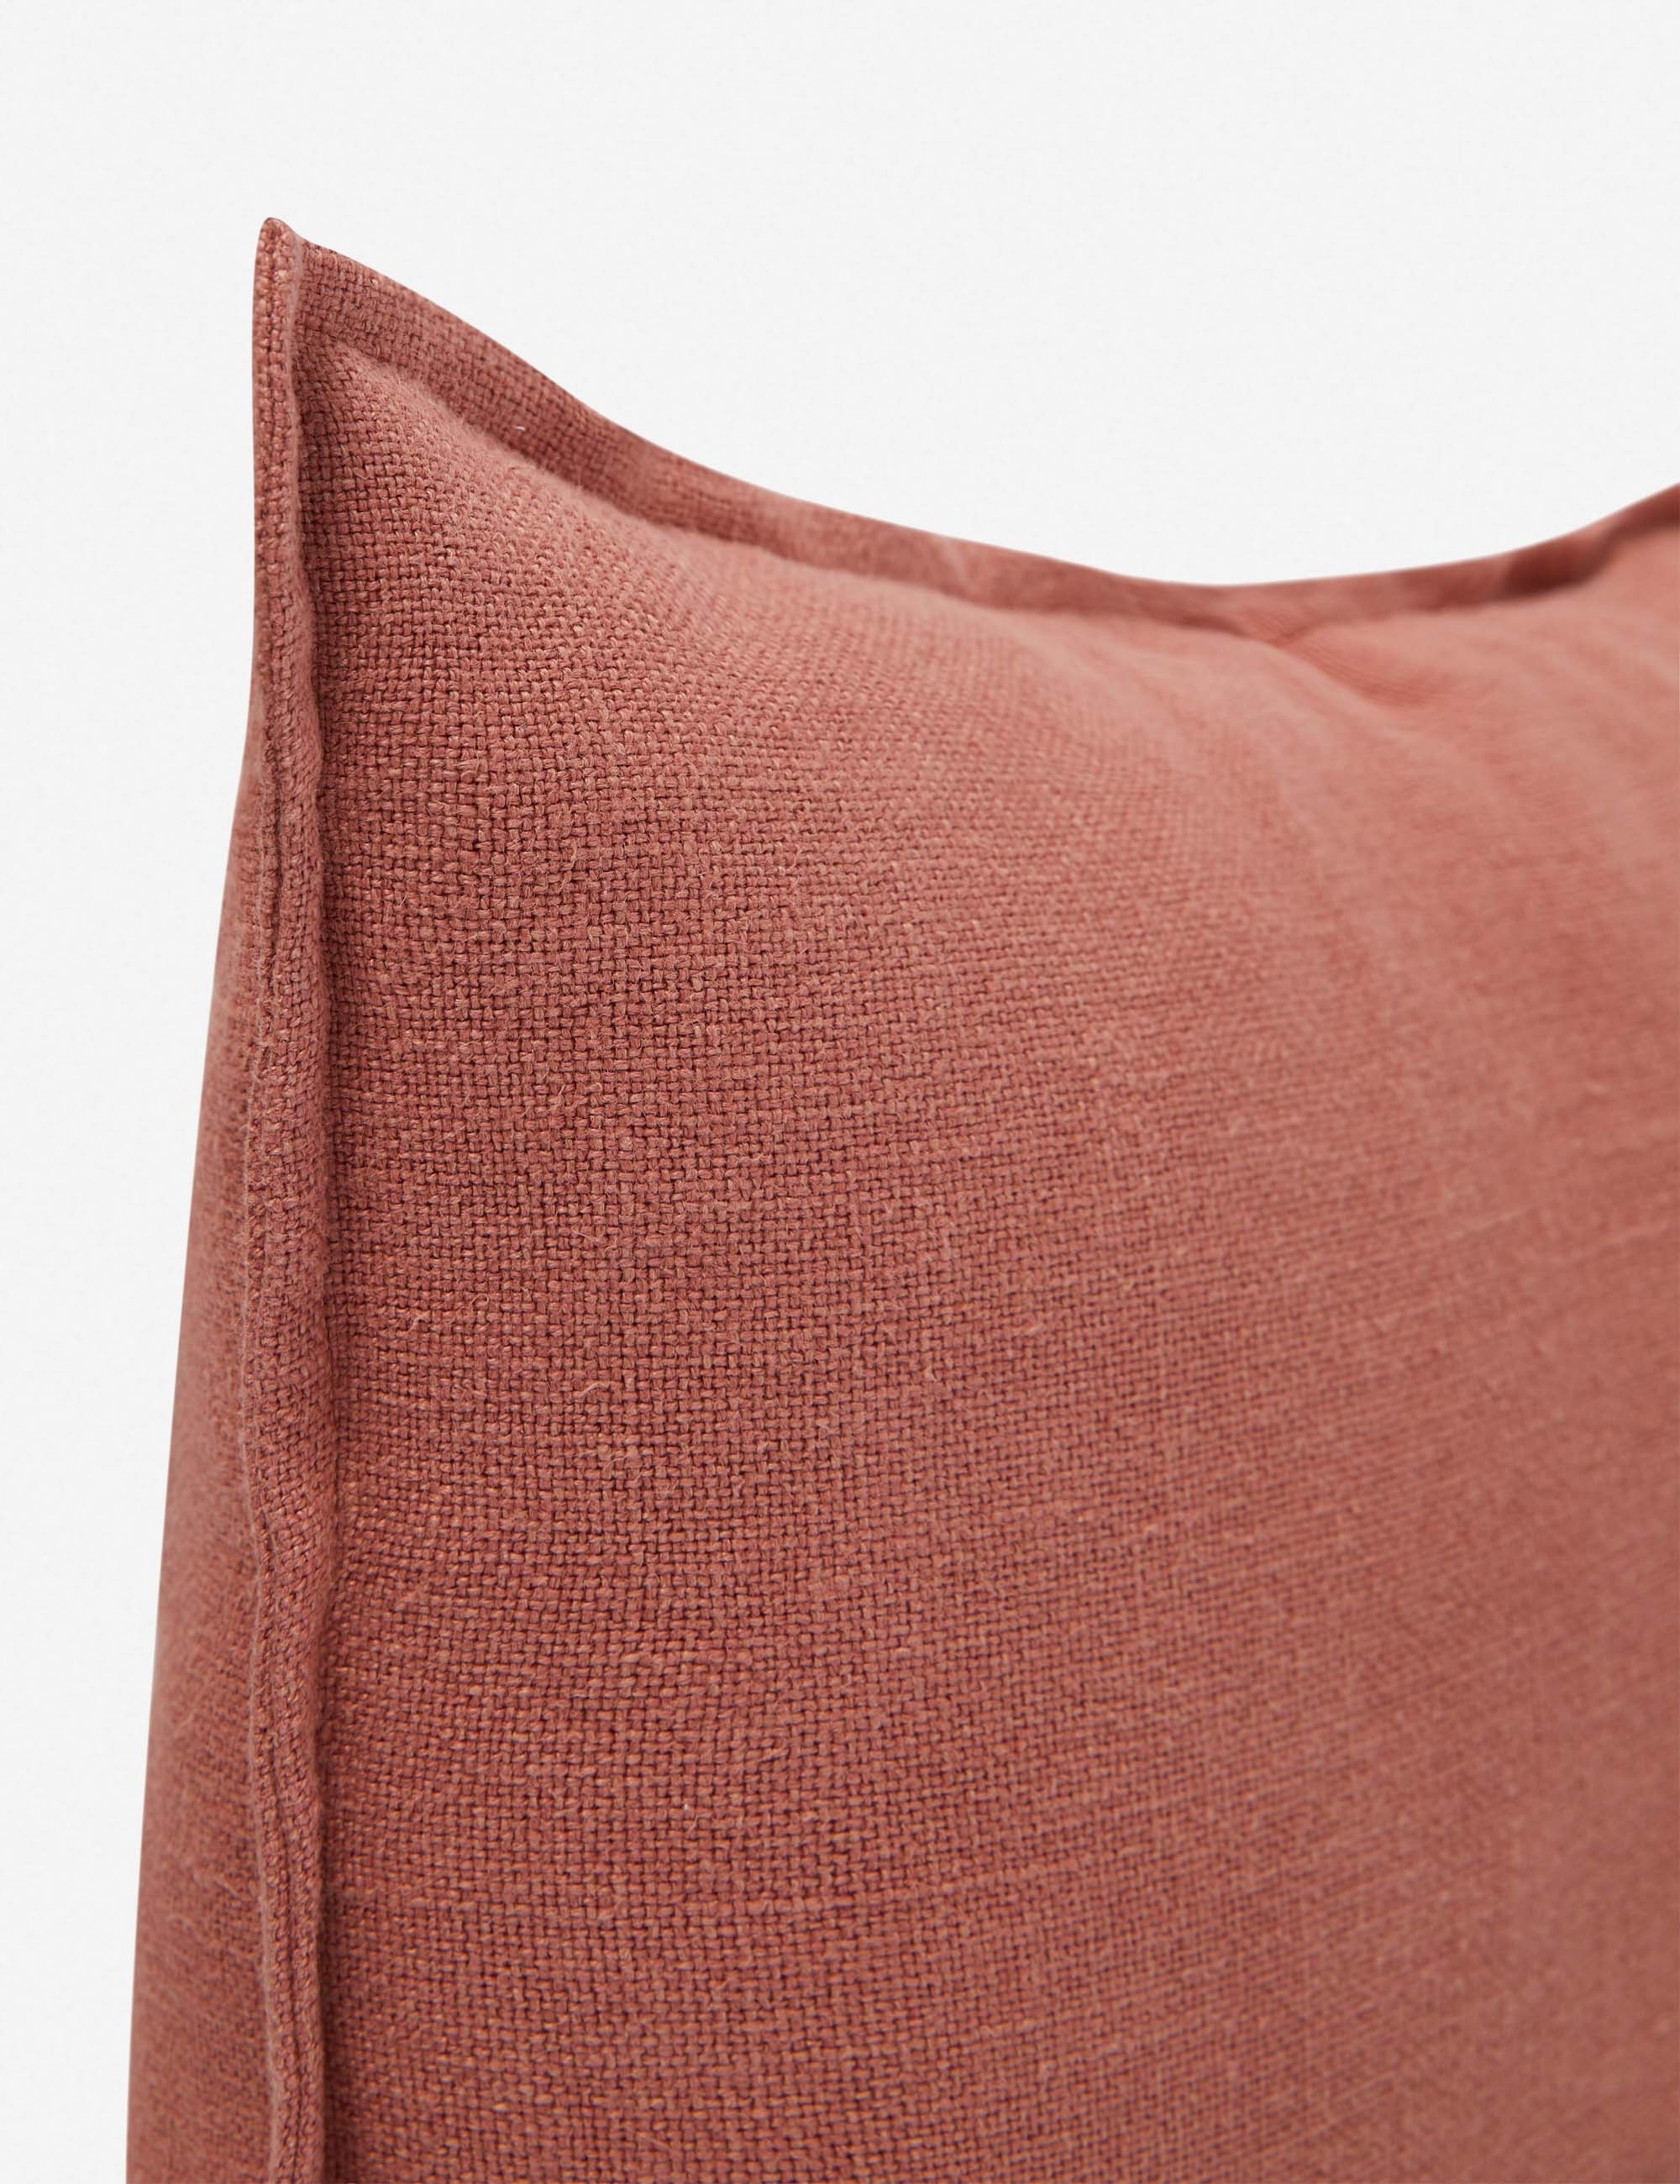 Kiran Linen Lumbar Pillow, Terra Cotta - Image 3